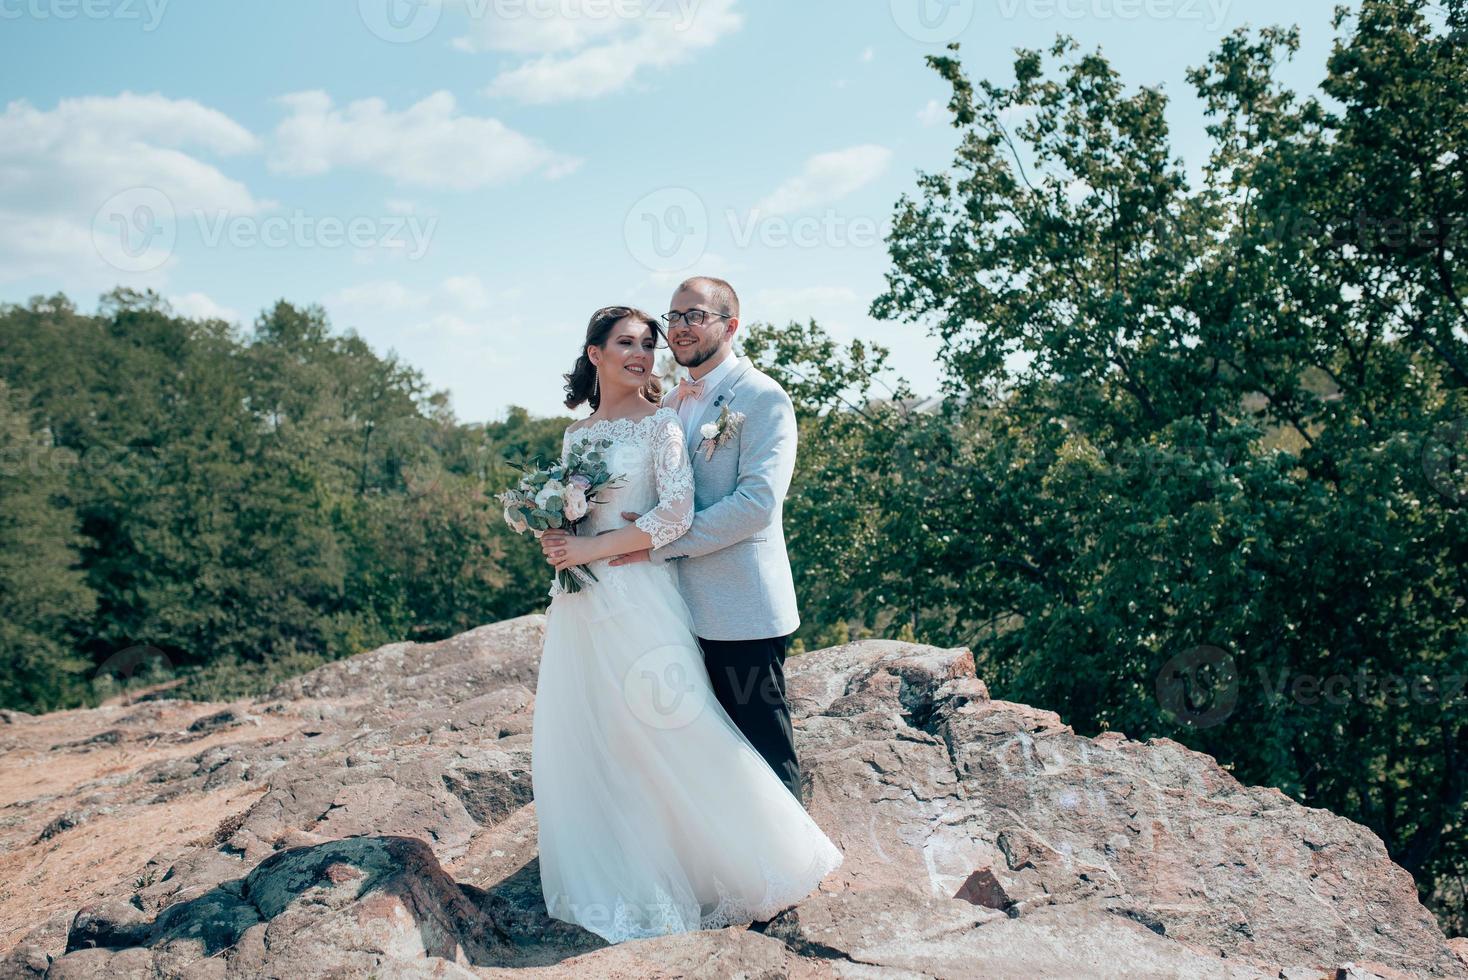 photo de mariage d'un marié barbu avec des lunettes dans une veste grise et une mariée sur un rocher